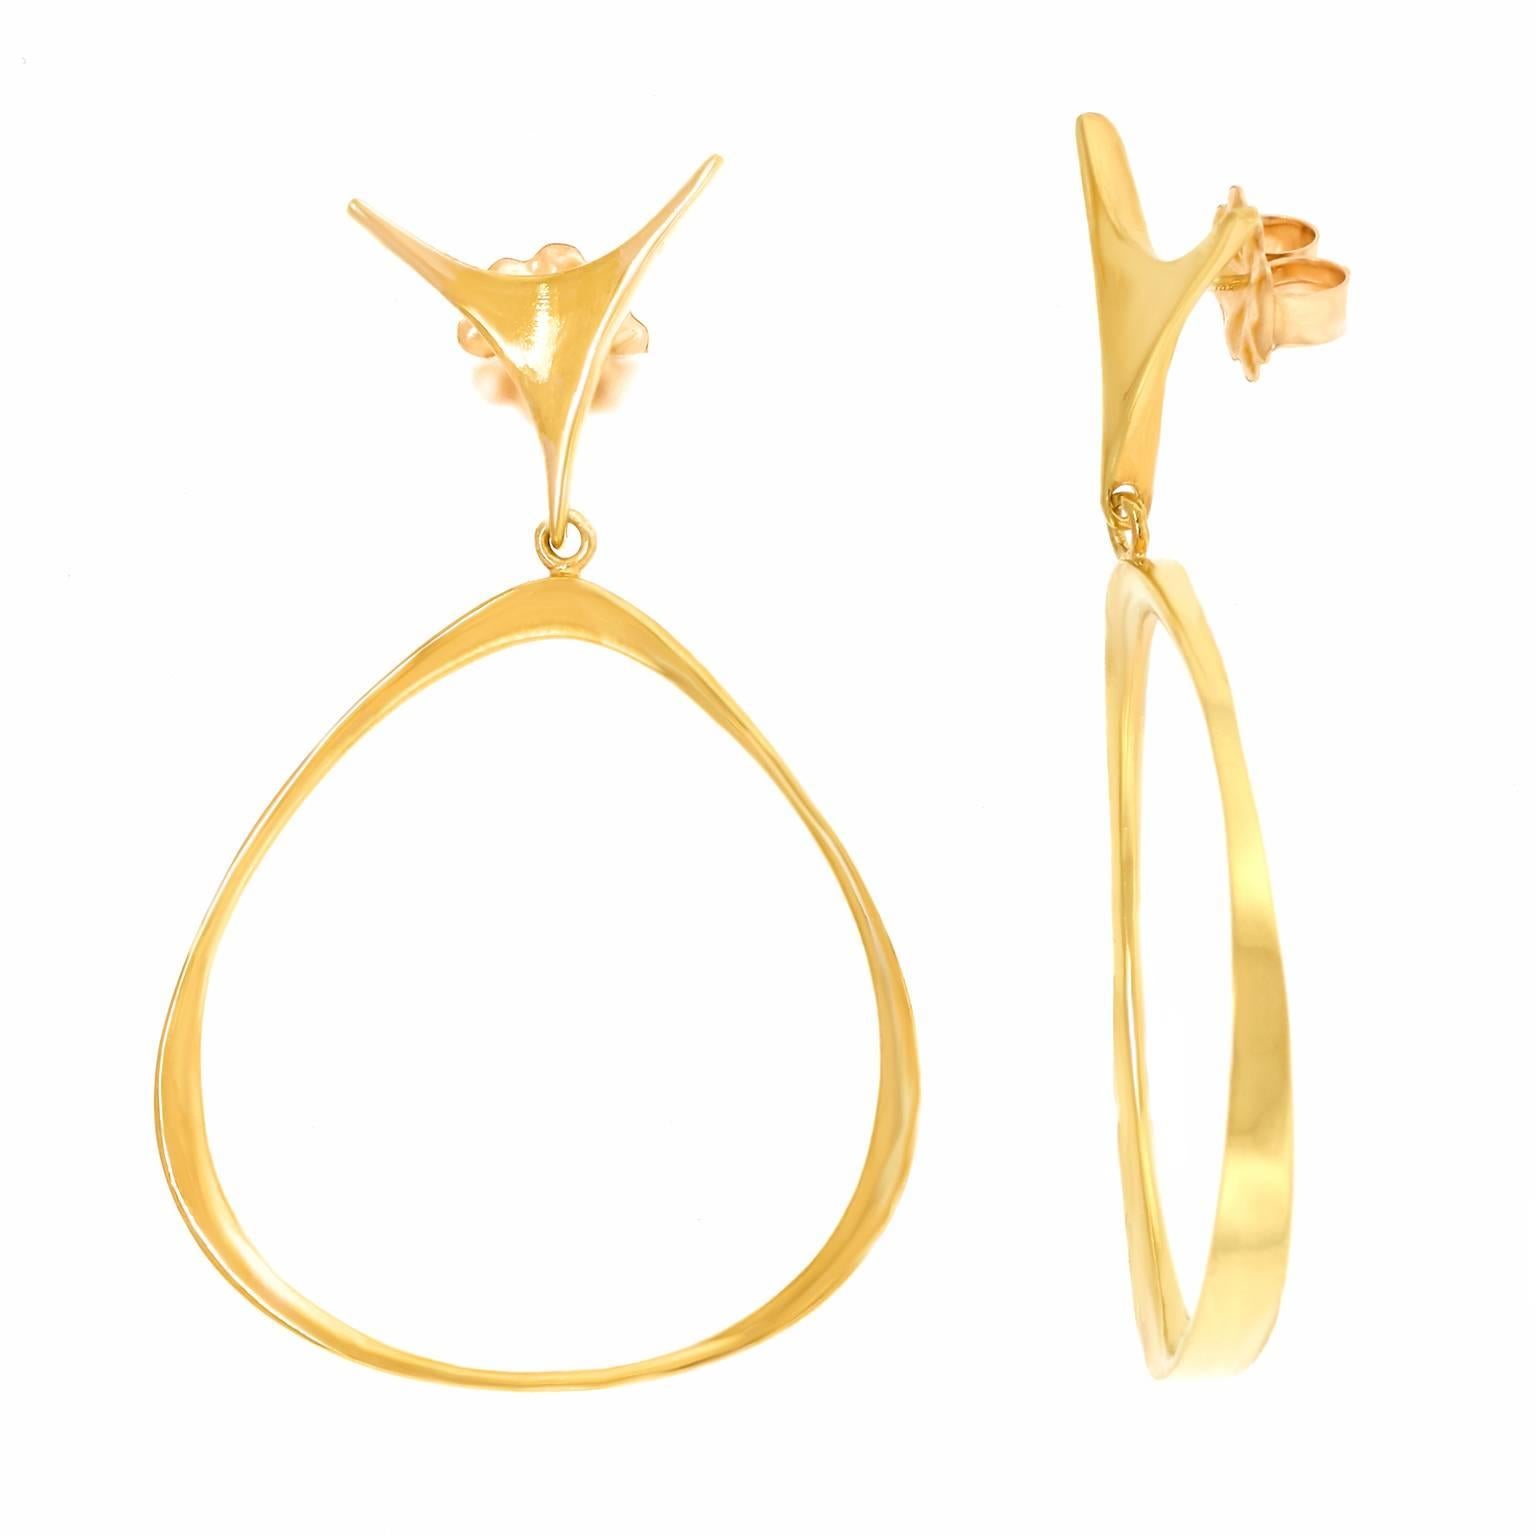 Fabulous Modernist Gold Hoop Earrings by Ed Wiener 3